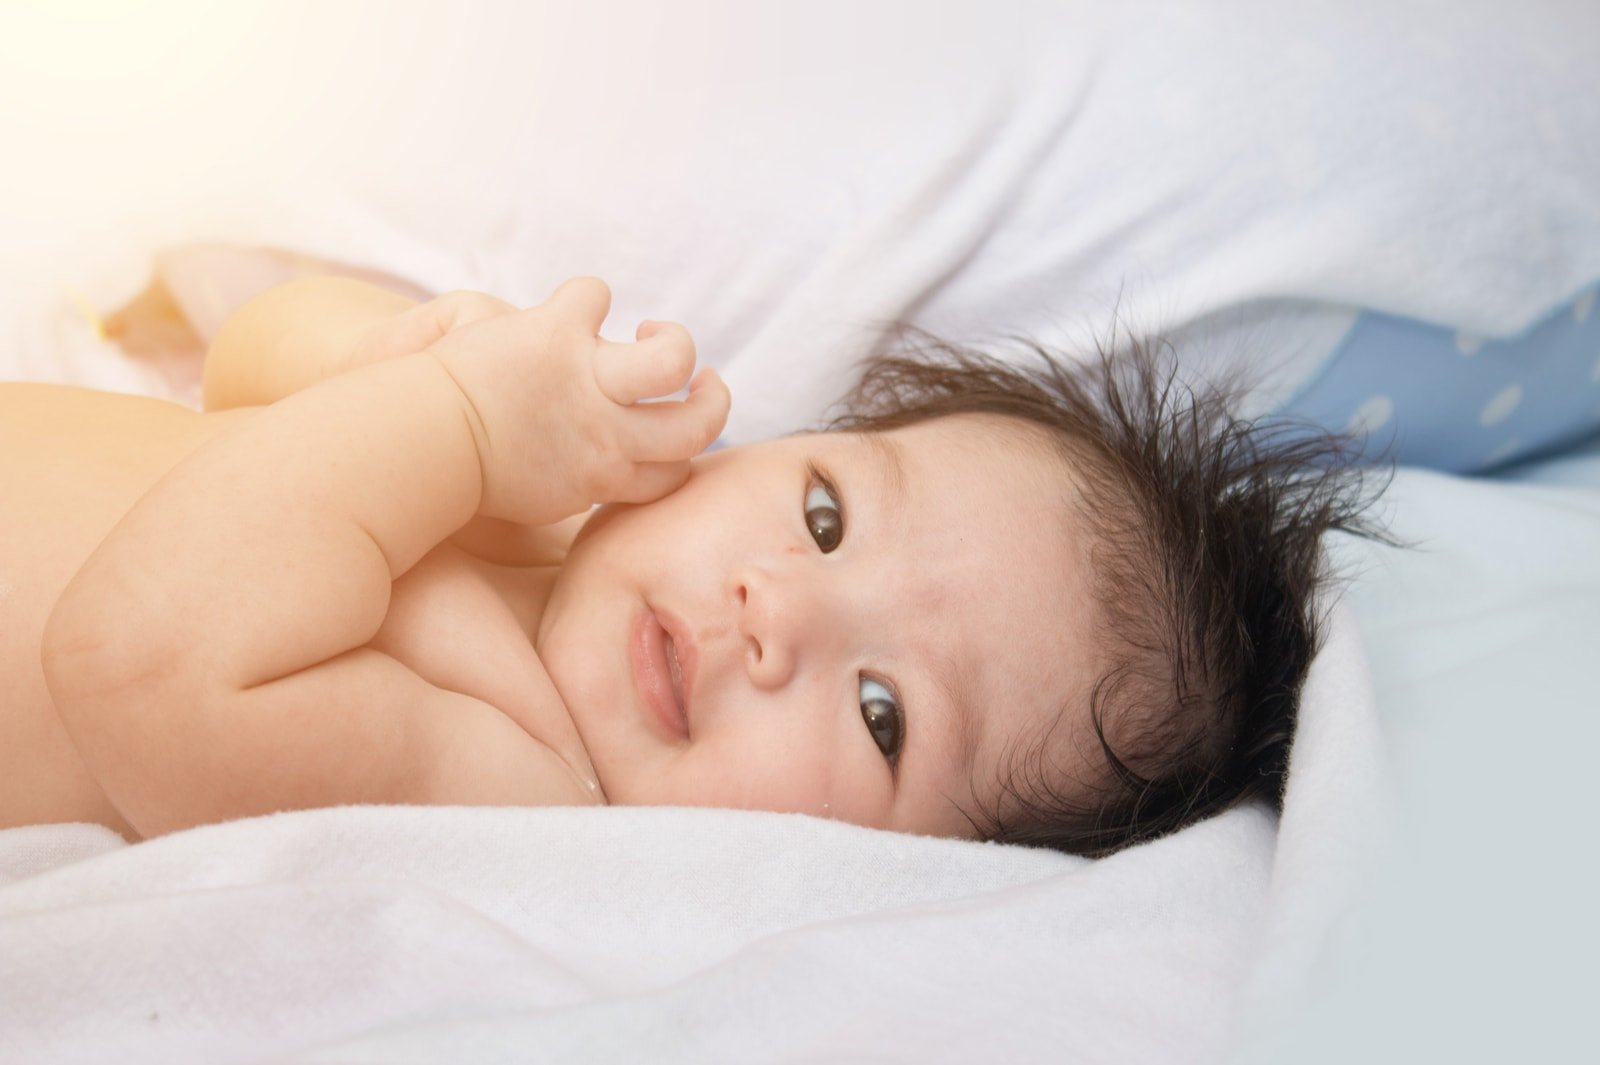 Manfaat dan Cara Melakukan Baby Spa Sendiri di Rumah